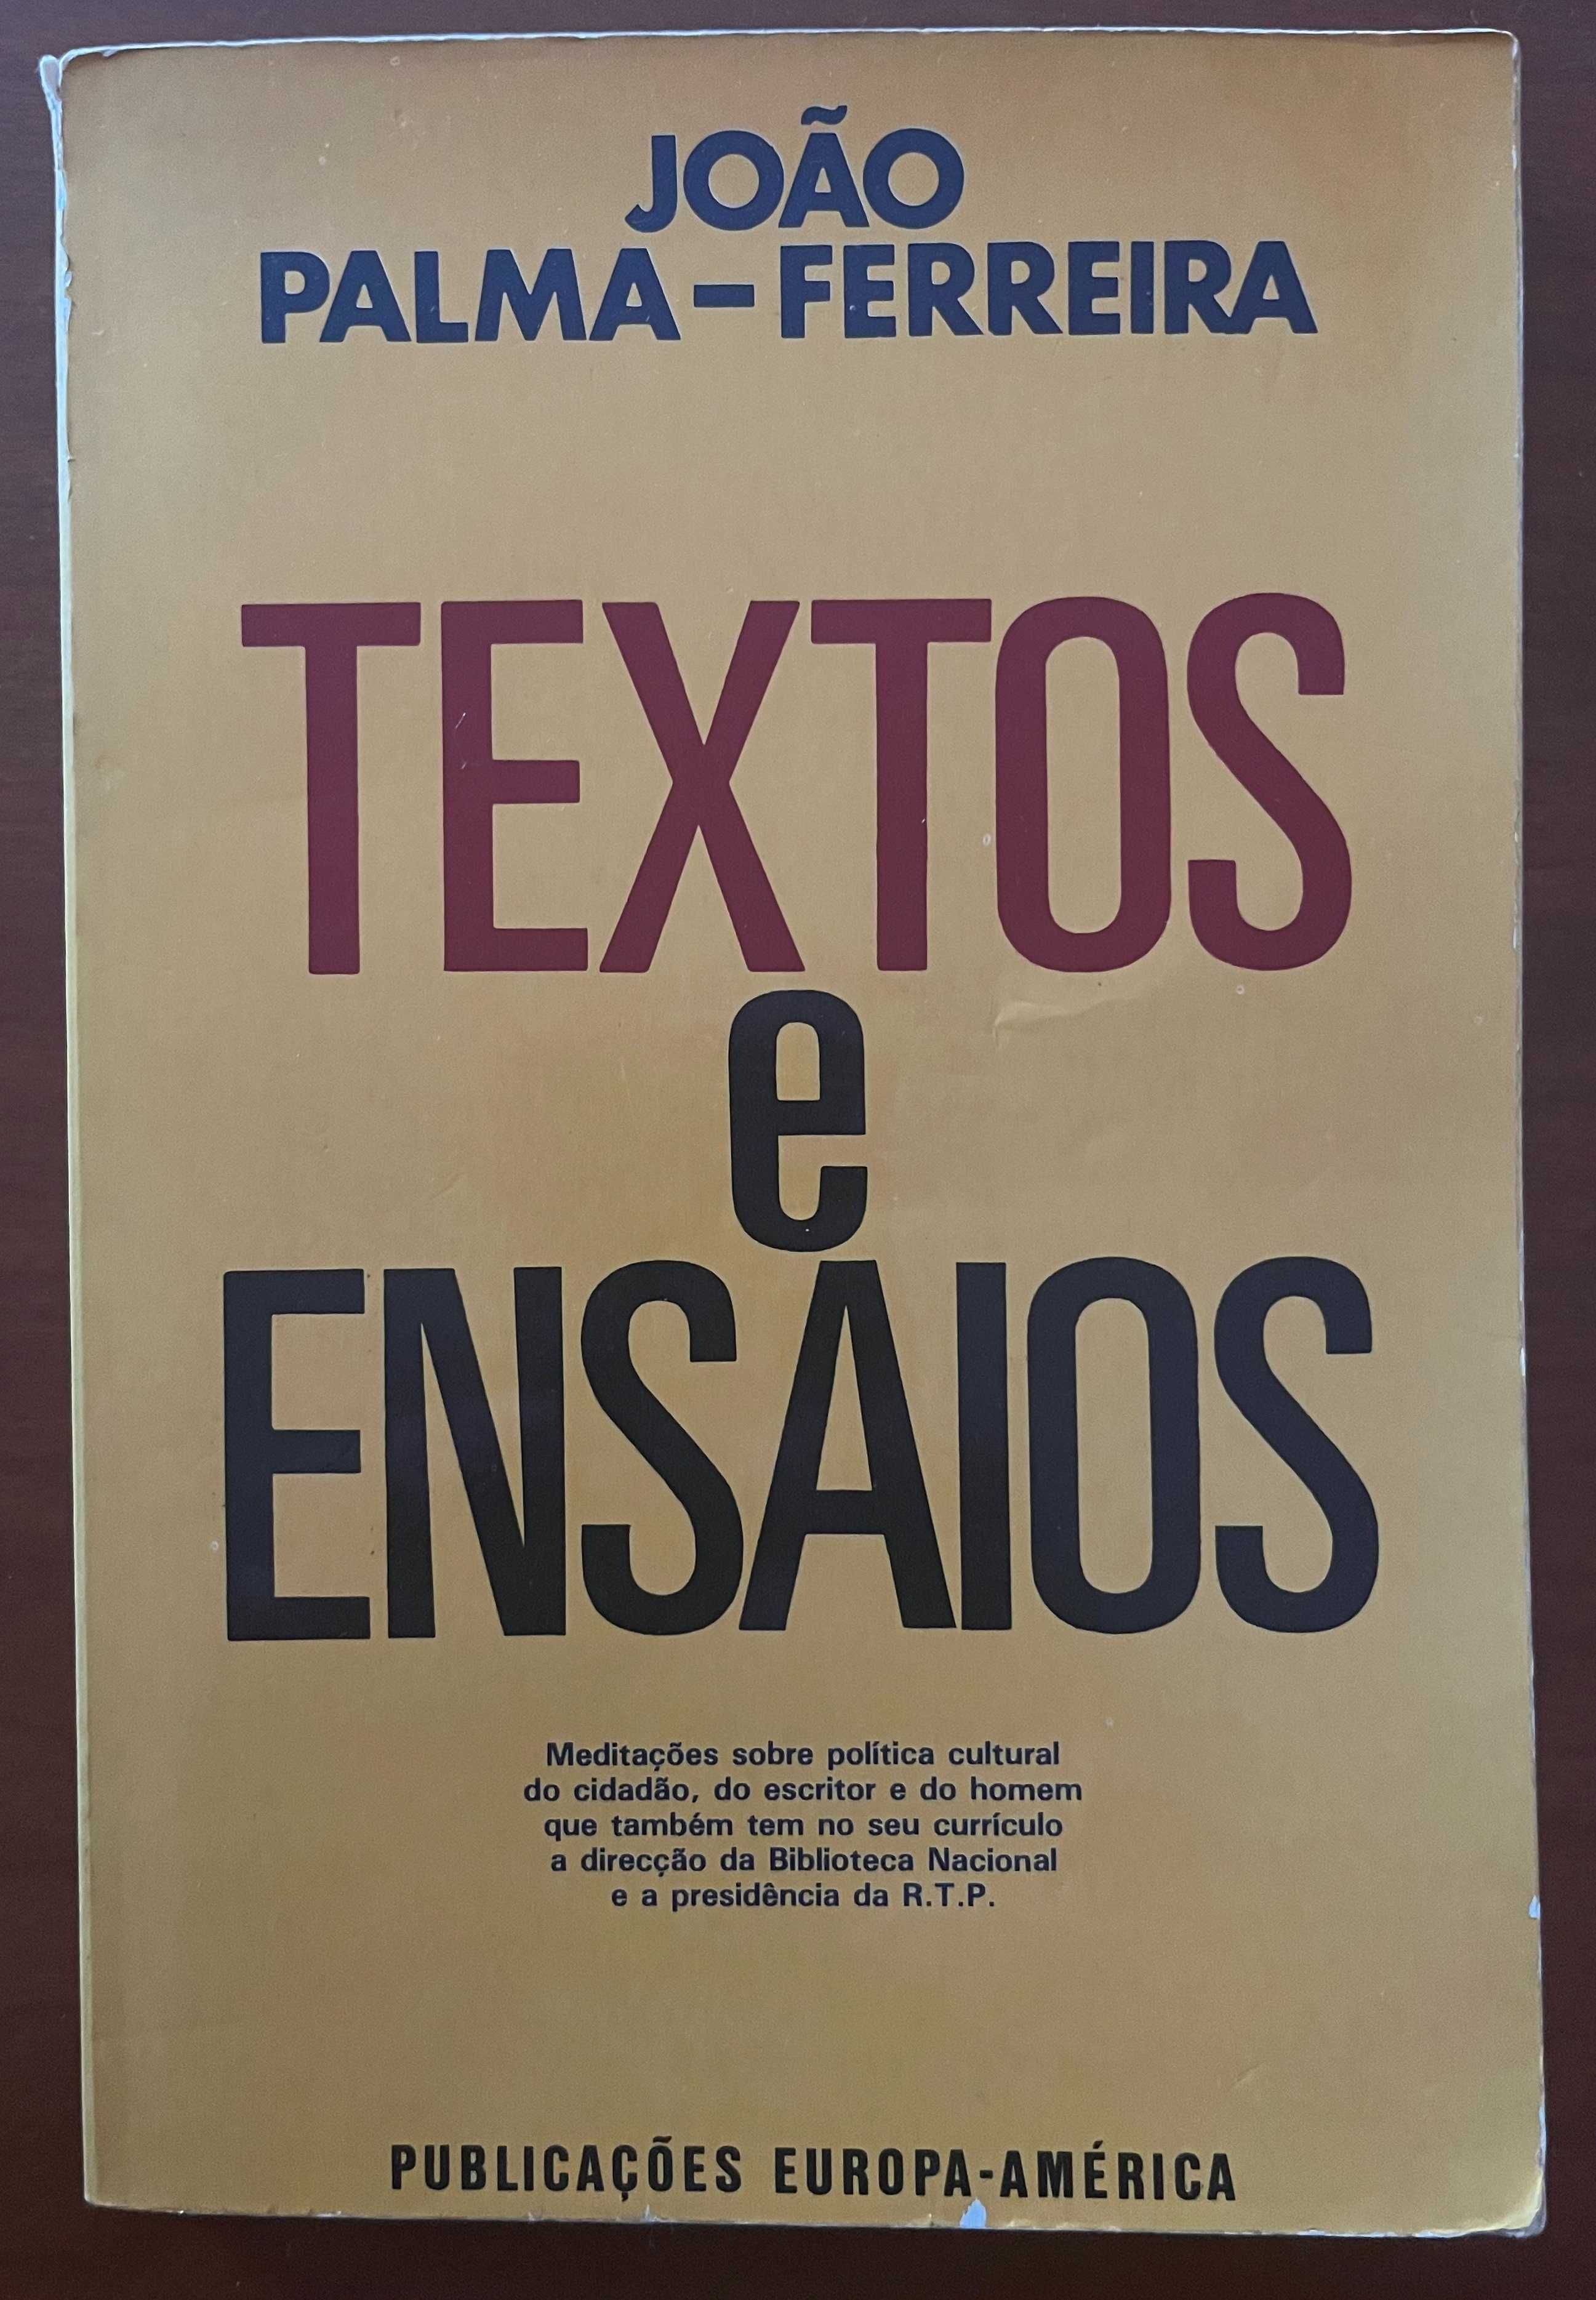 "Textos e Ensaios" de João Palma-Ferreira